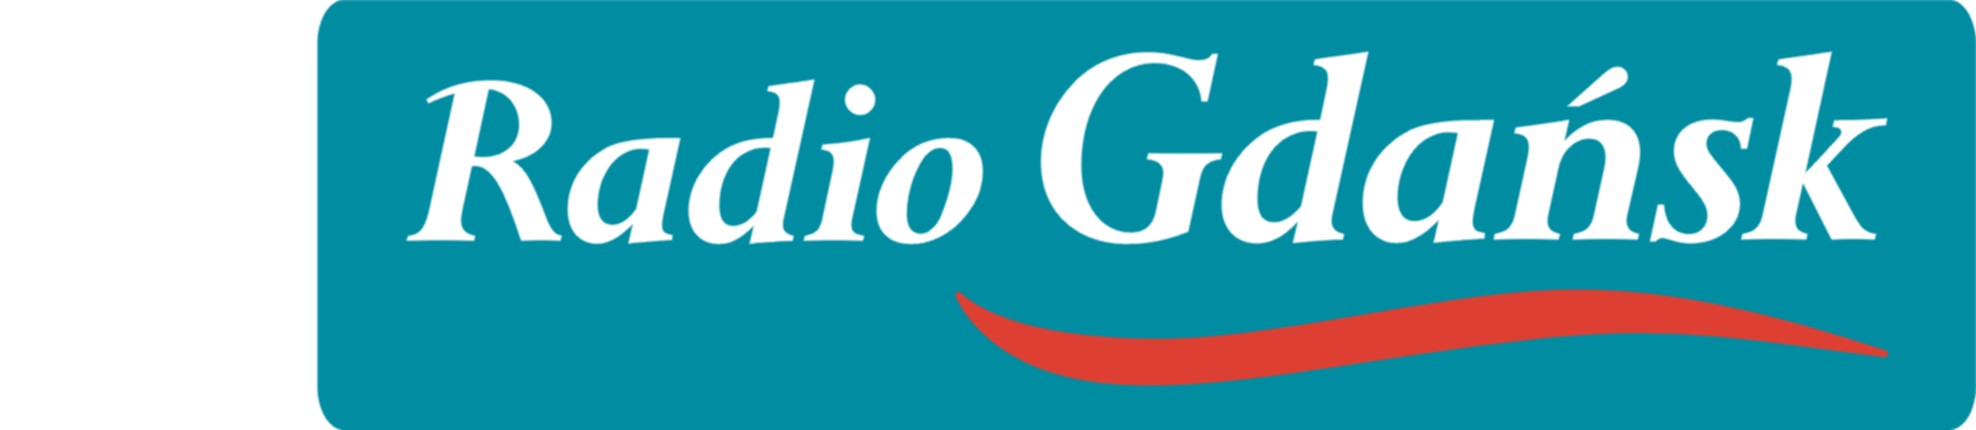 Radio Gdańsk poziom